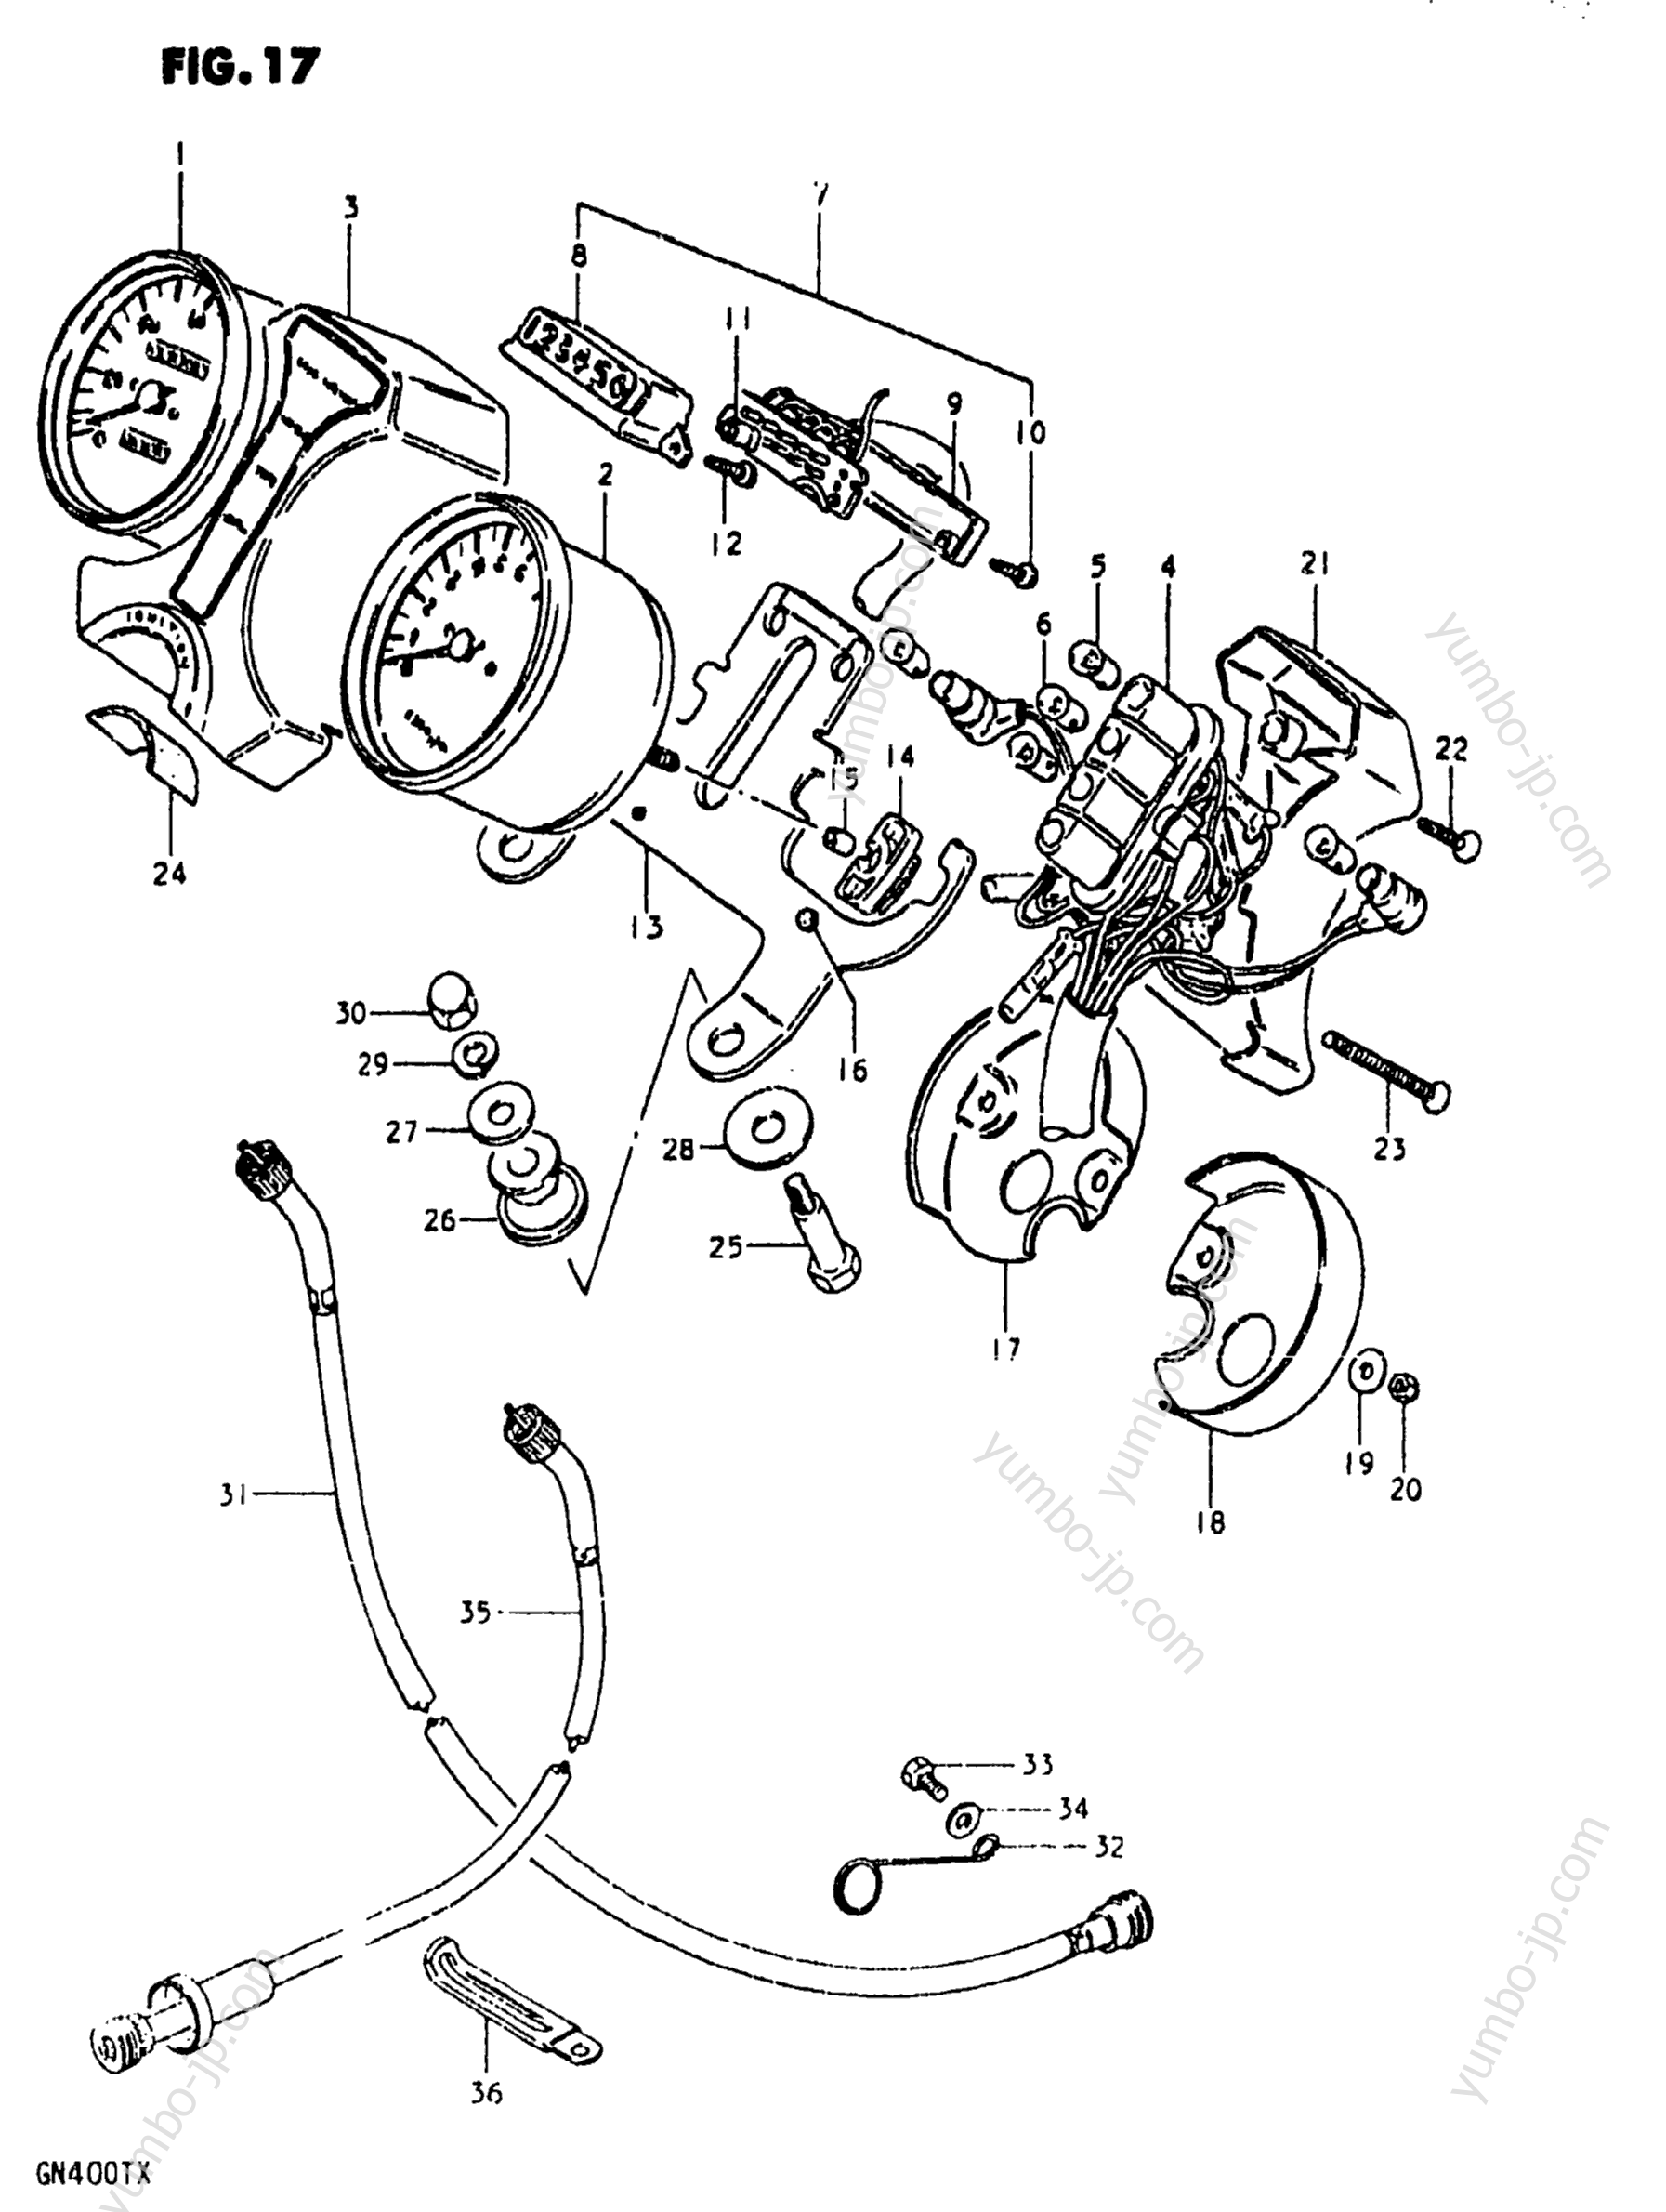 Speedometer - Tachometer for motorcycles SUZUKI GN400TX 1981 year